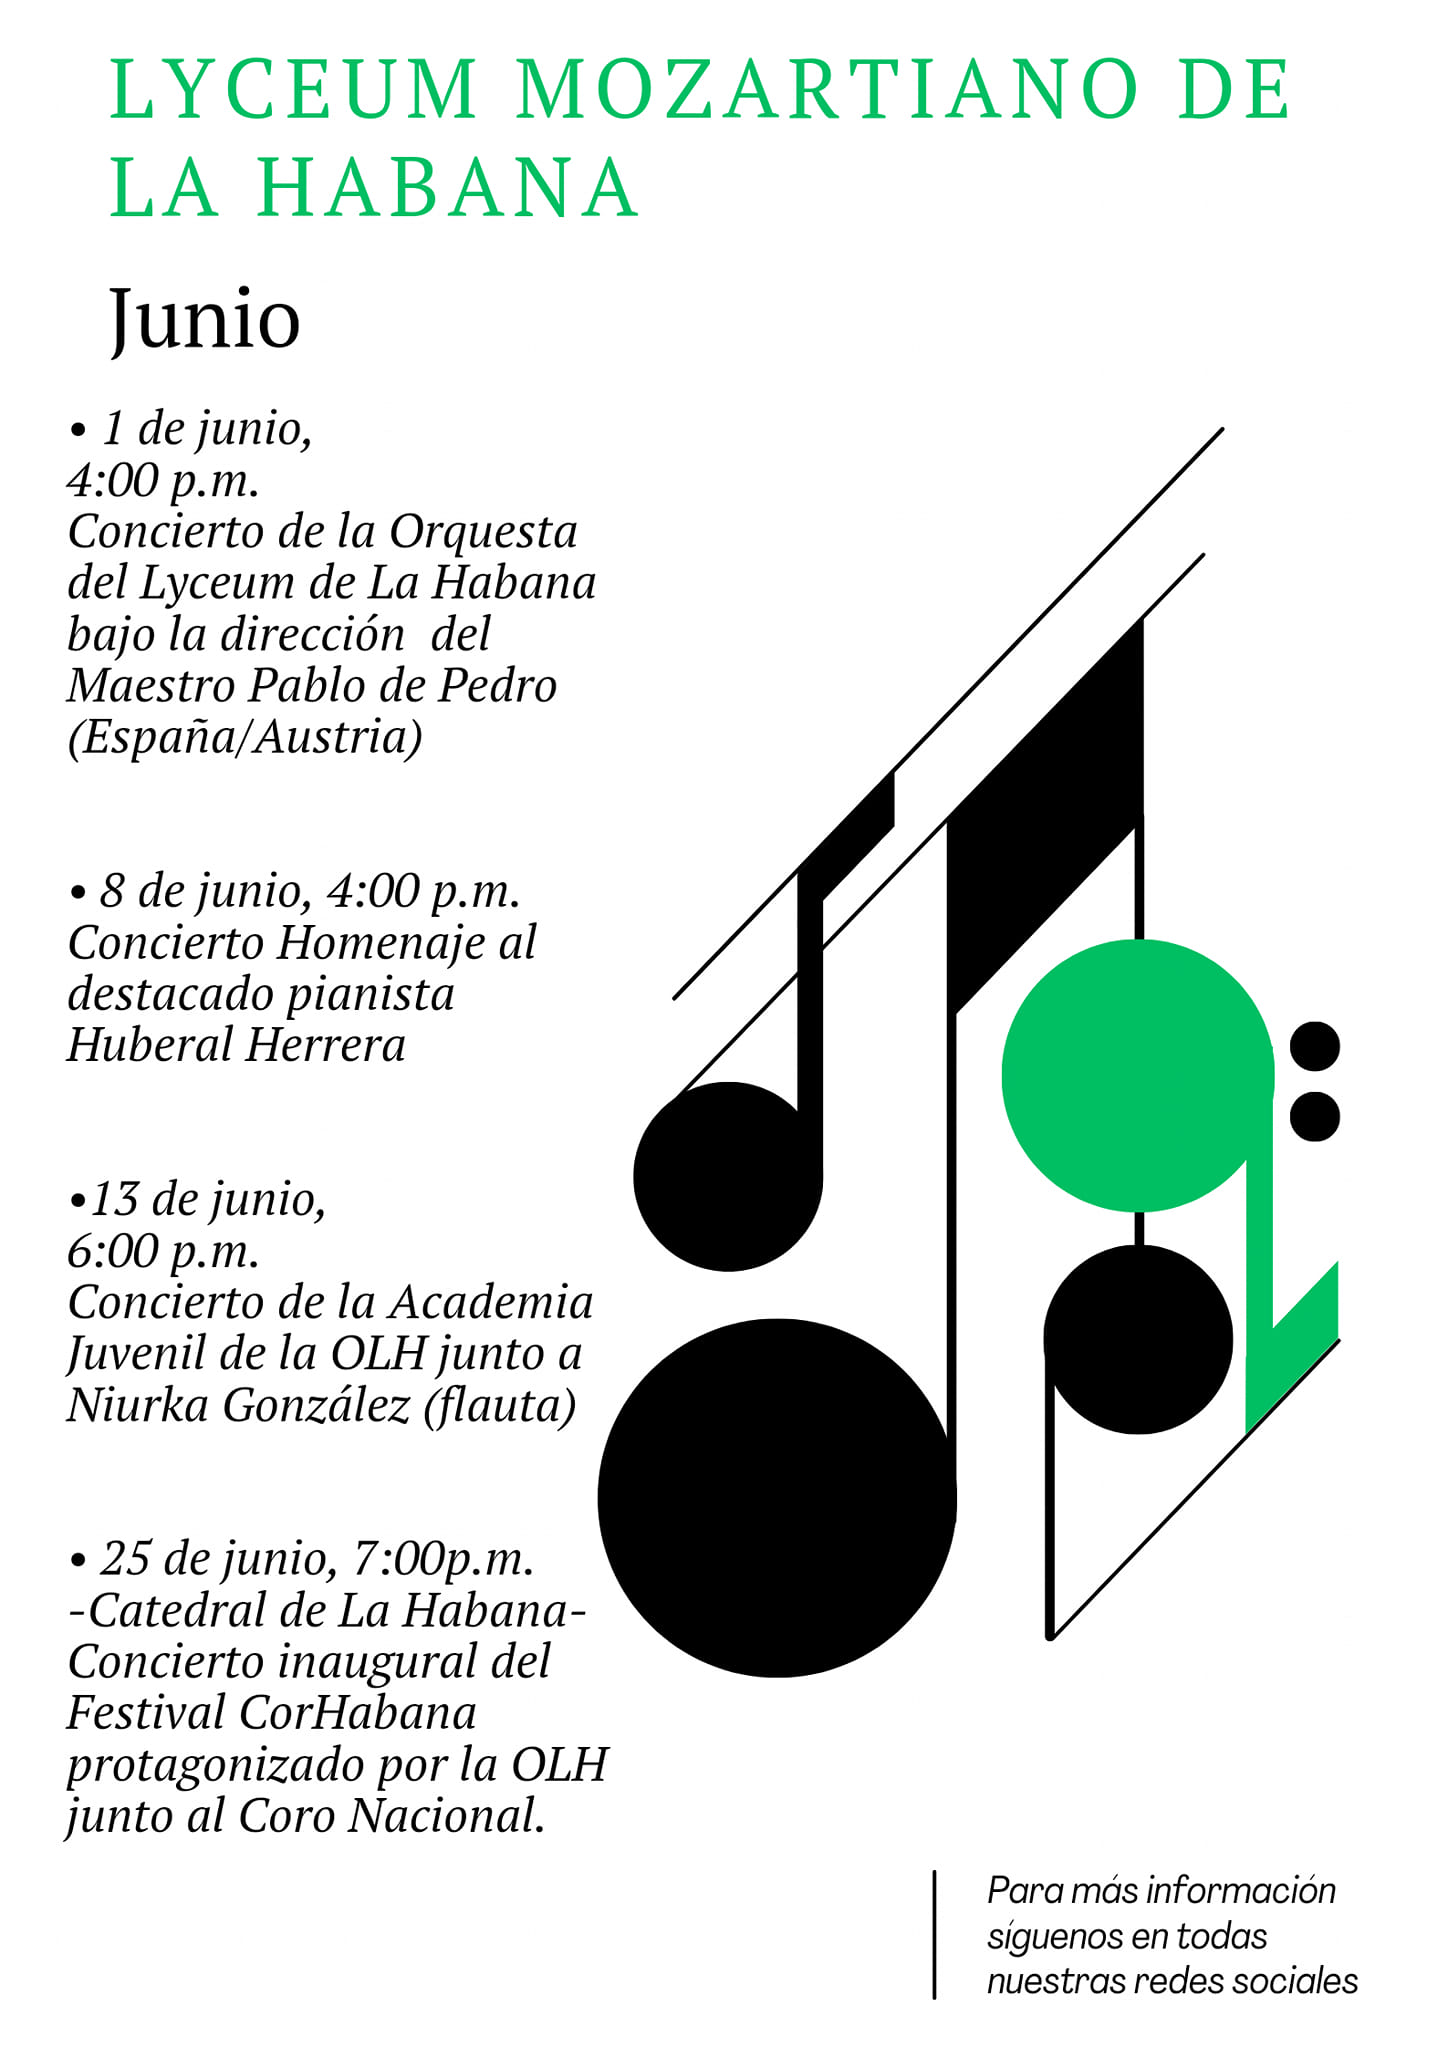 Junio Lyceum Mozartiano de La Habana